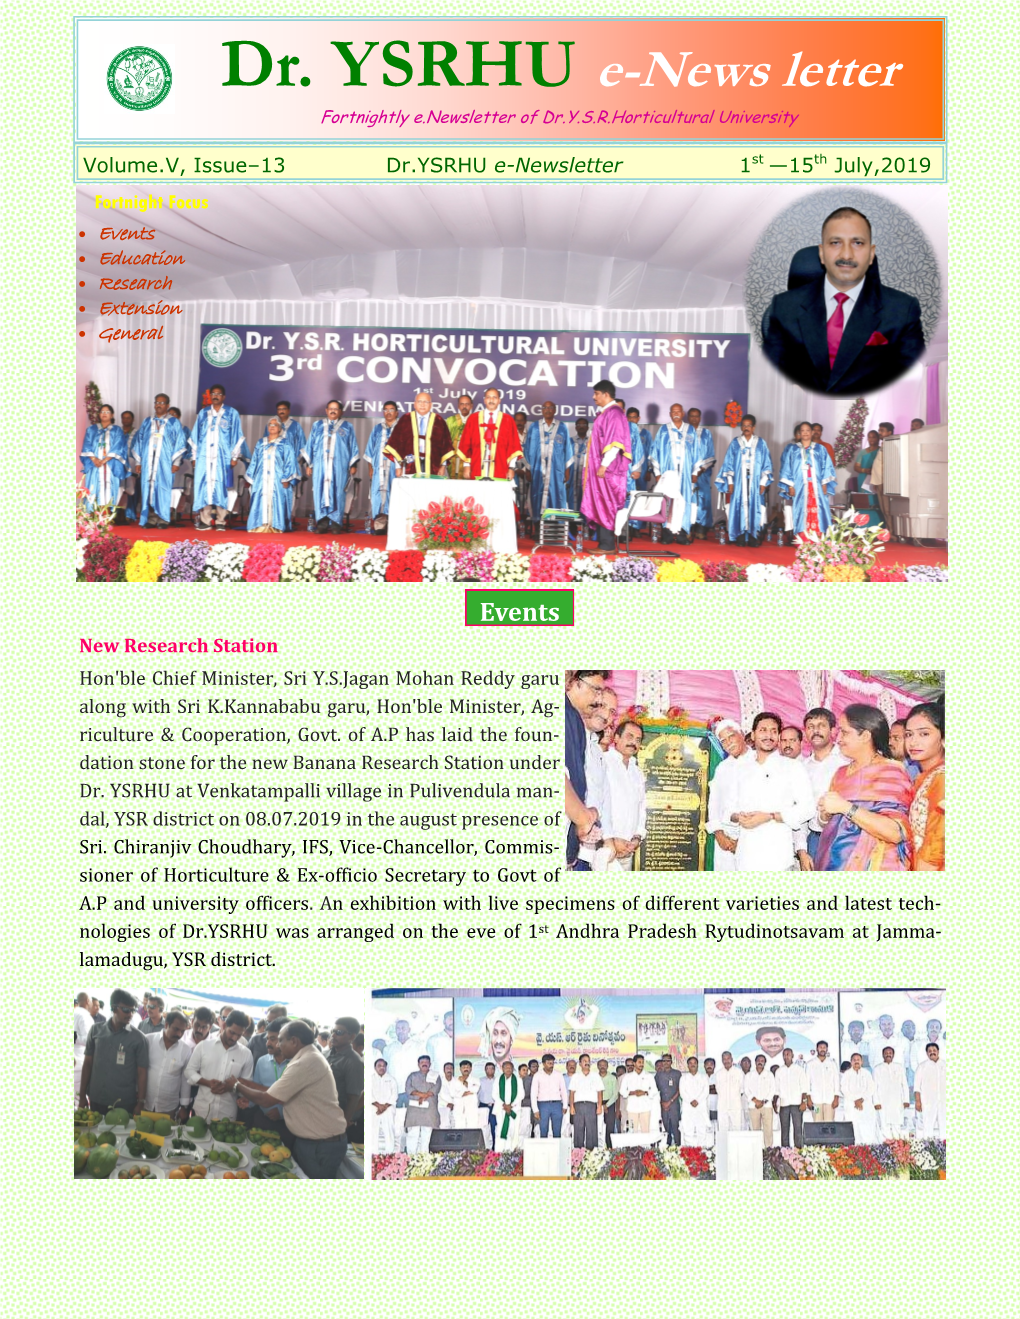 Dr. YSRHU E-News Letter Fortnightly E.Newsletter of Dr.Y.S.R.Horticultural University